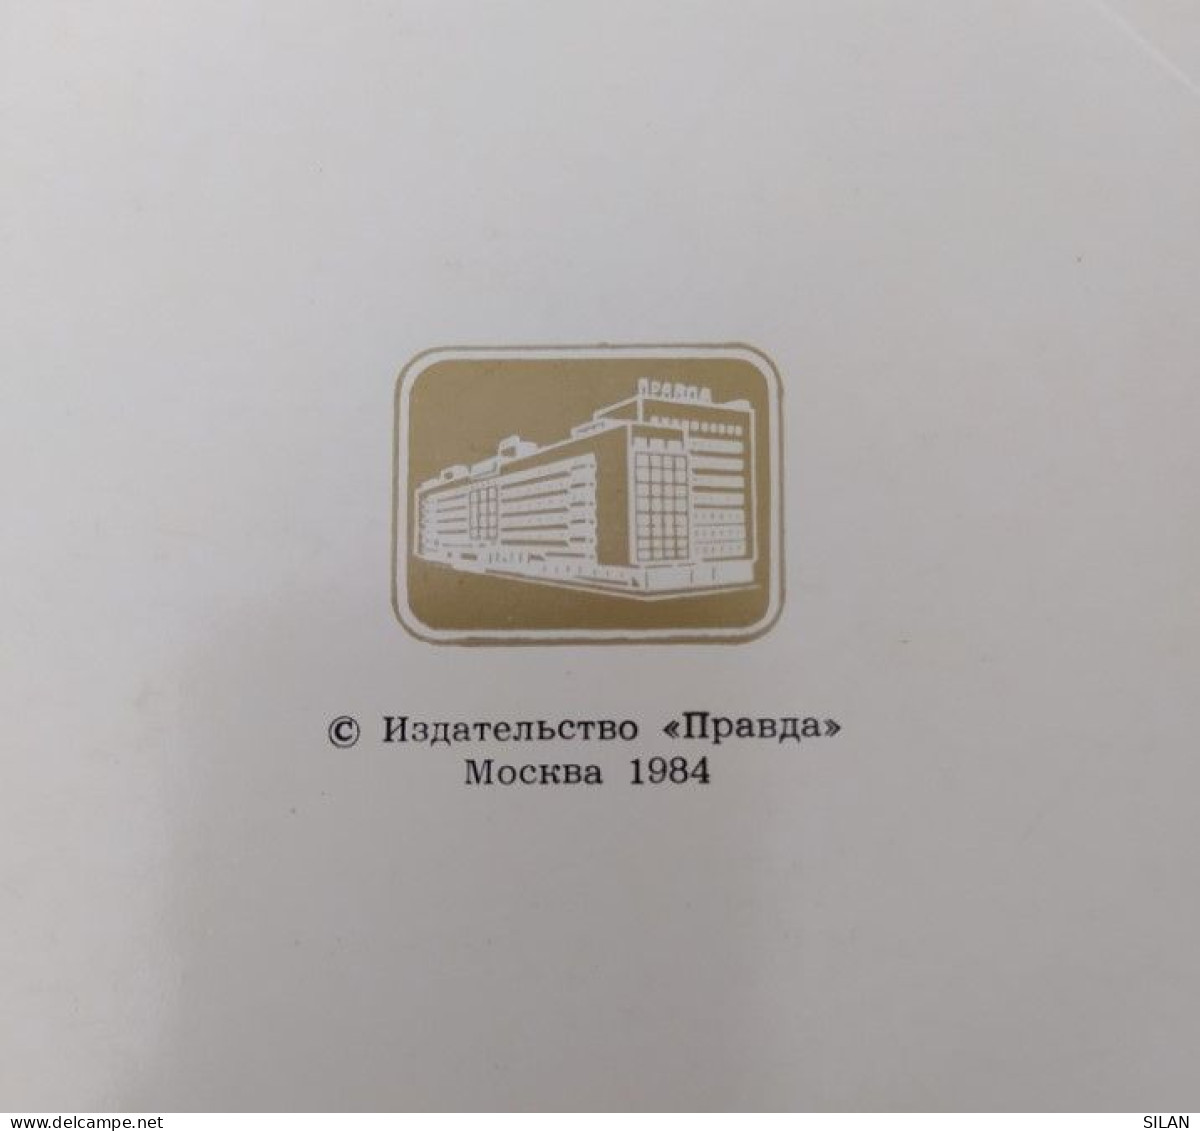 Carpeta Con 12 Postales Museo Hermitage Rusia 1984 - Rusland